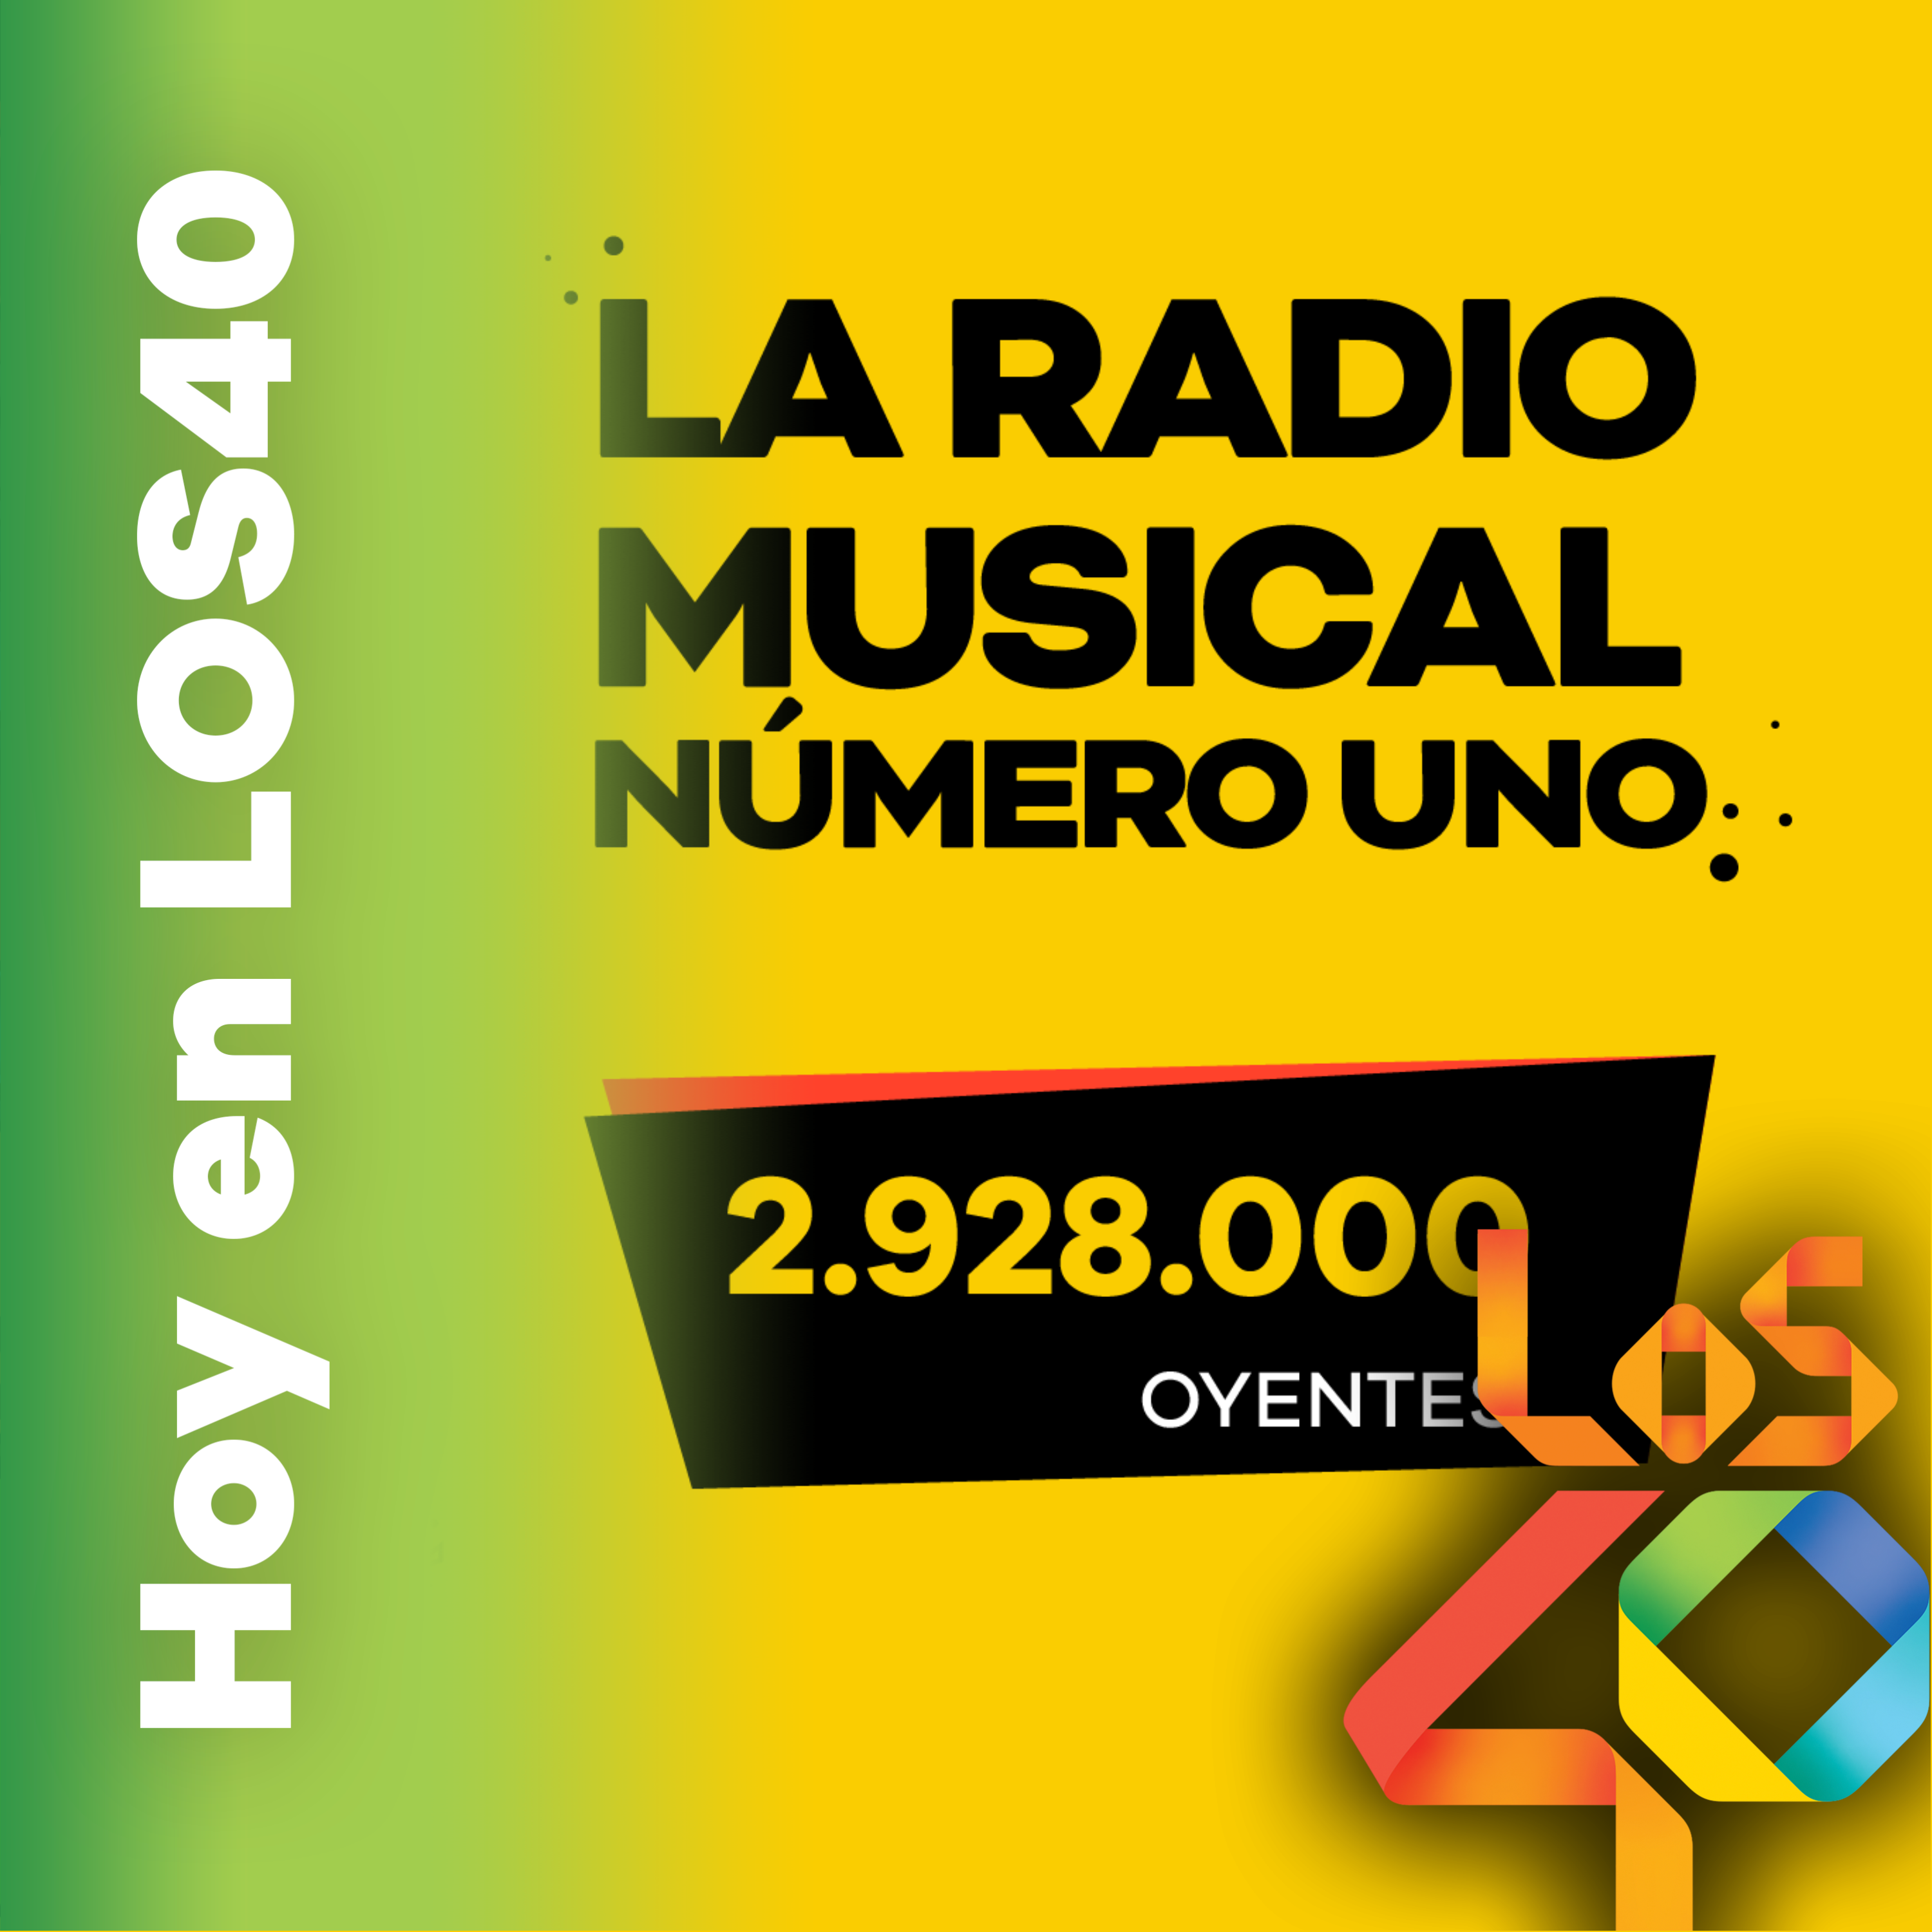 LOS40 cierra el año creciendo como líder en la radio musical de España - Noticias del 1 de diciembre 